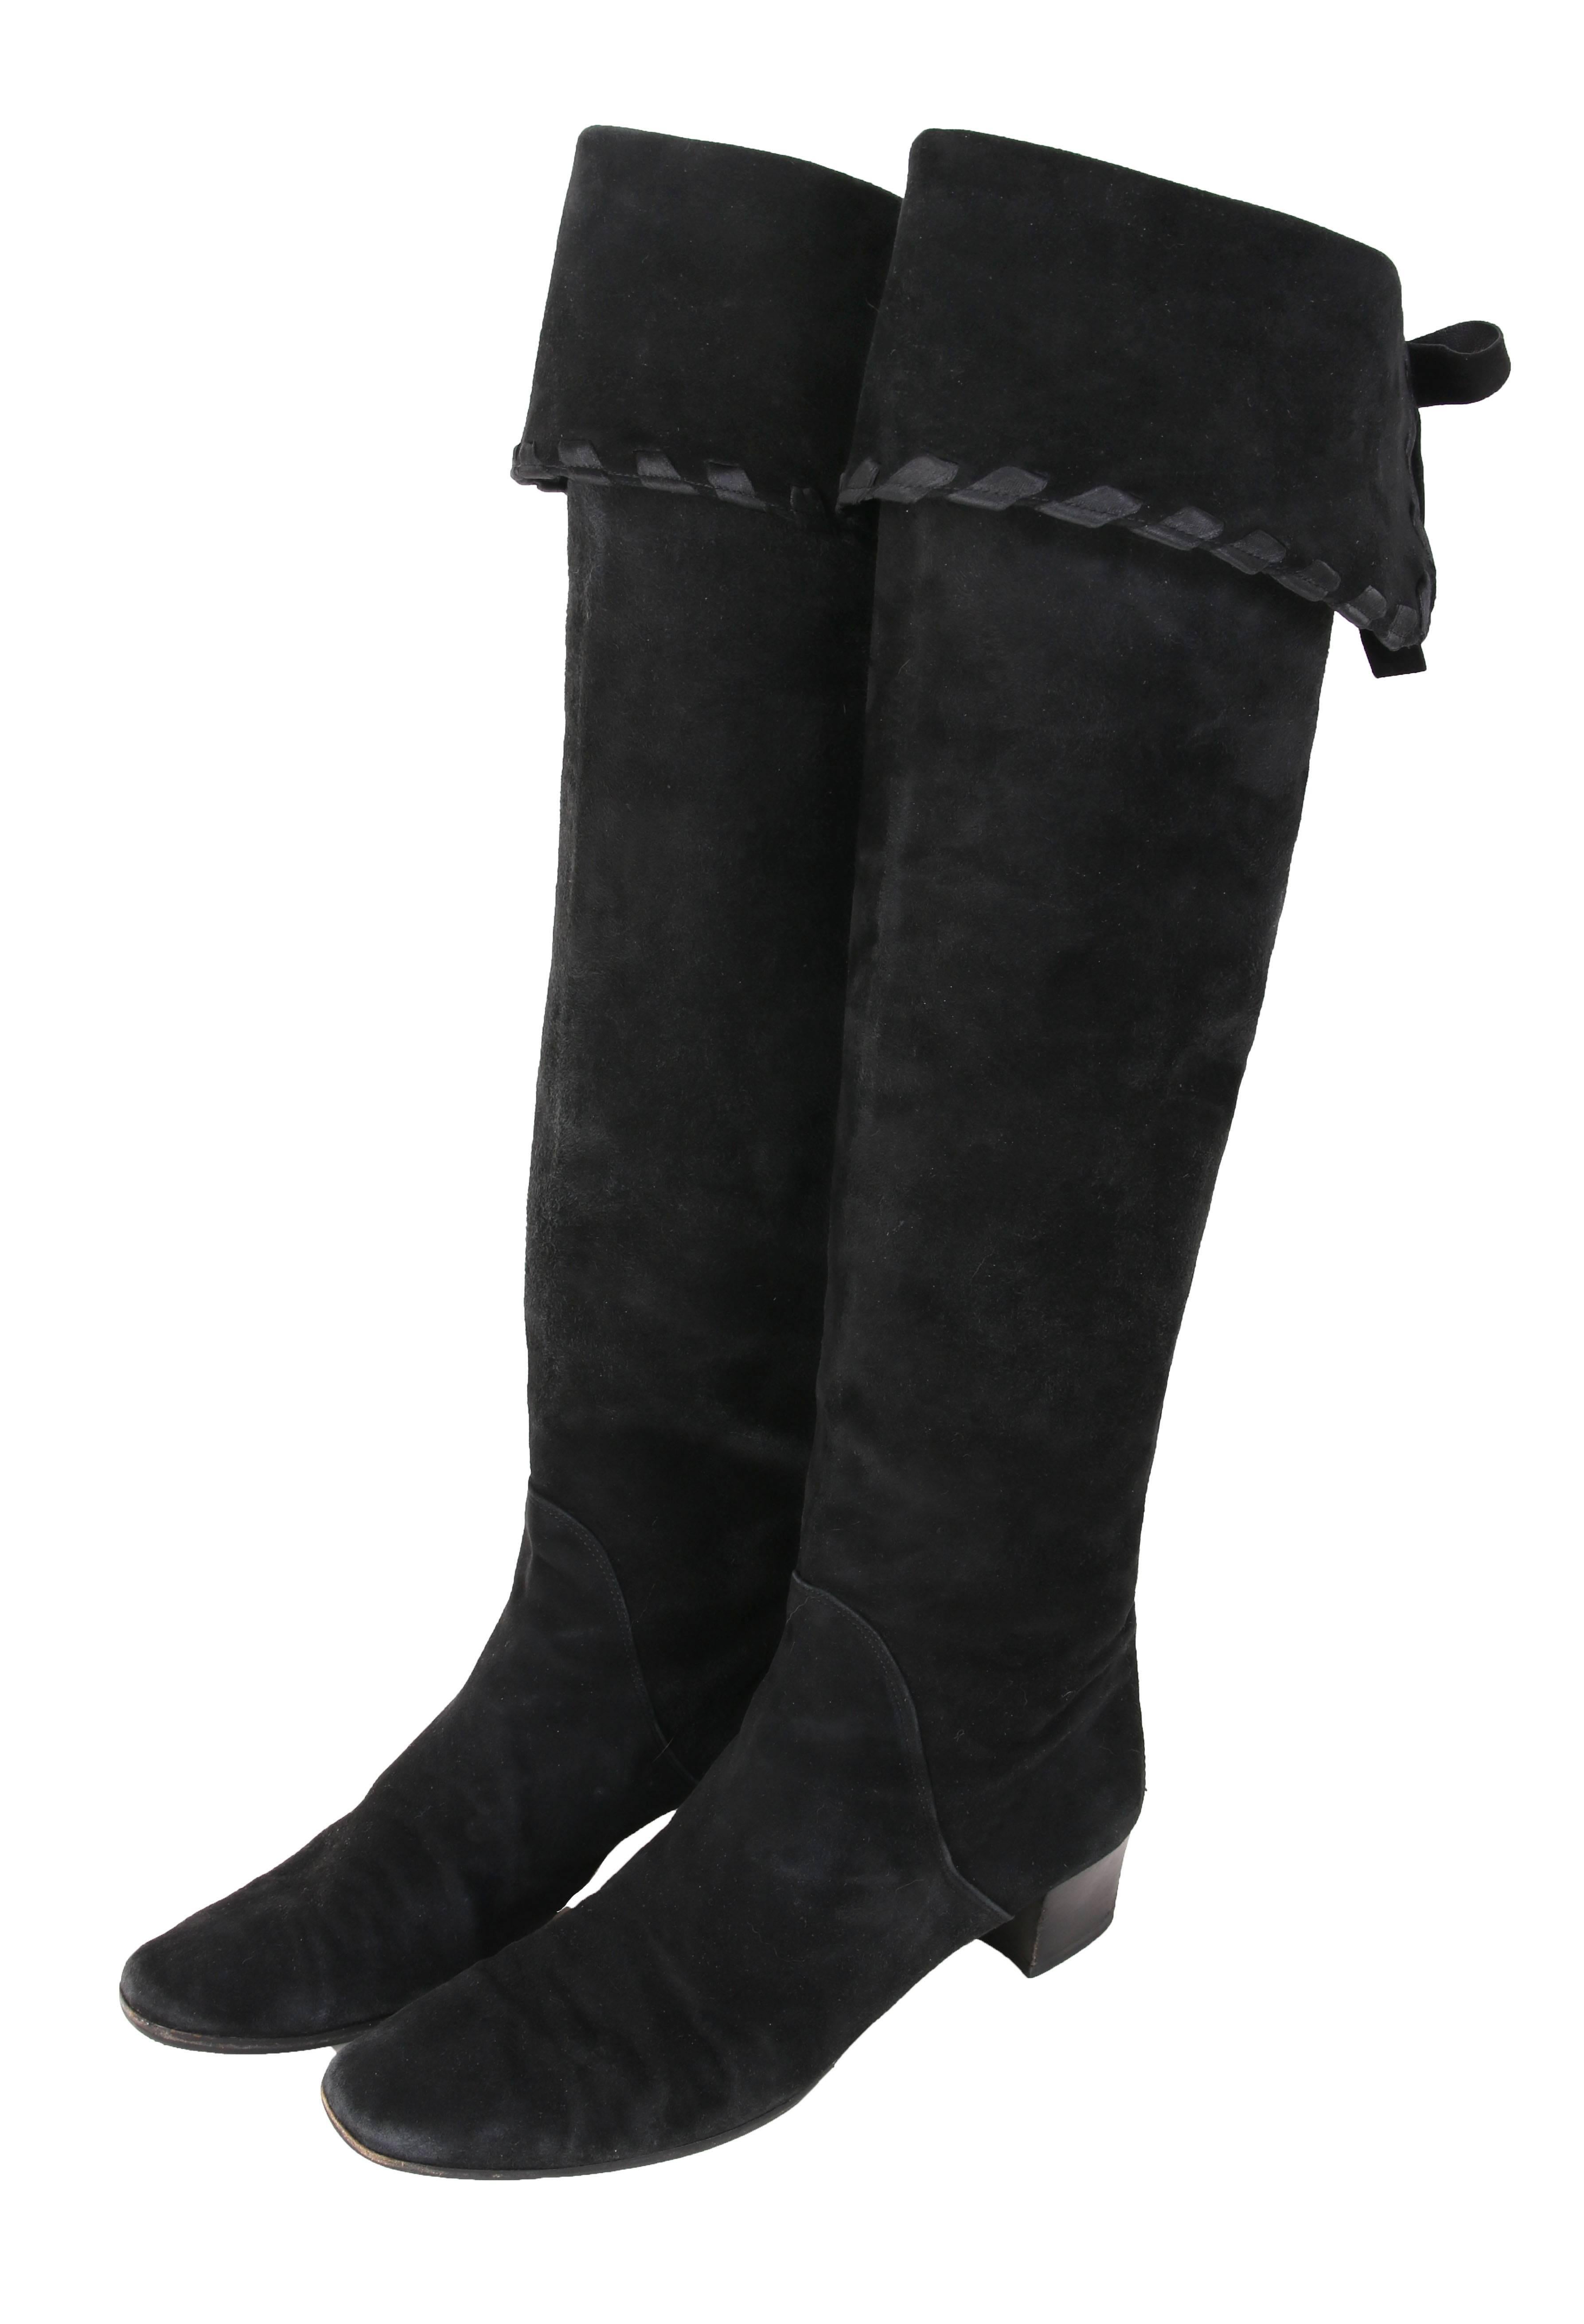 Vintage Yves Saint Laurent By bottes en daim noir qui peuvent être portés au genou ou à la cuisse. Le haut de la botte est terminé par un ruban de satin et des liens décoratifs en cuir à l'arrière. Les bottes sont estampillées Yves Saint Laurent à